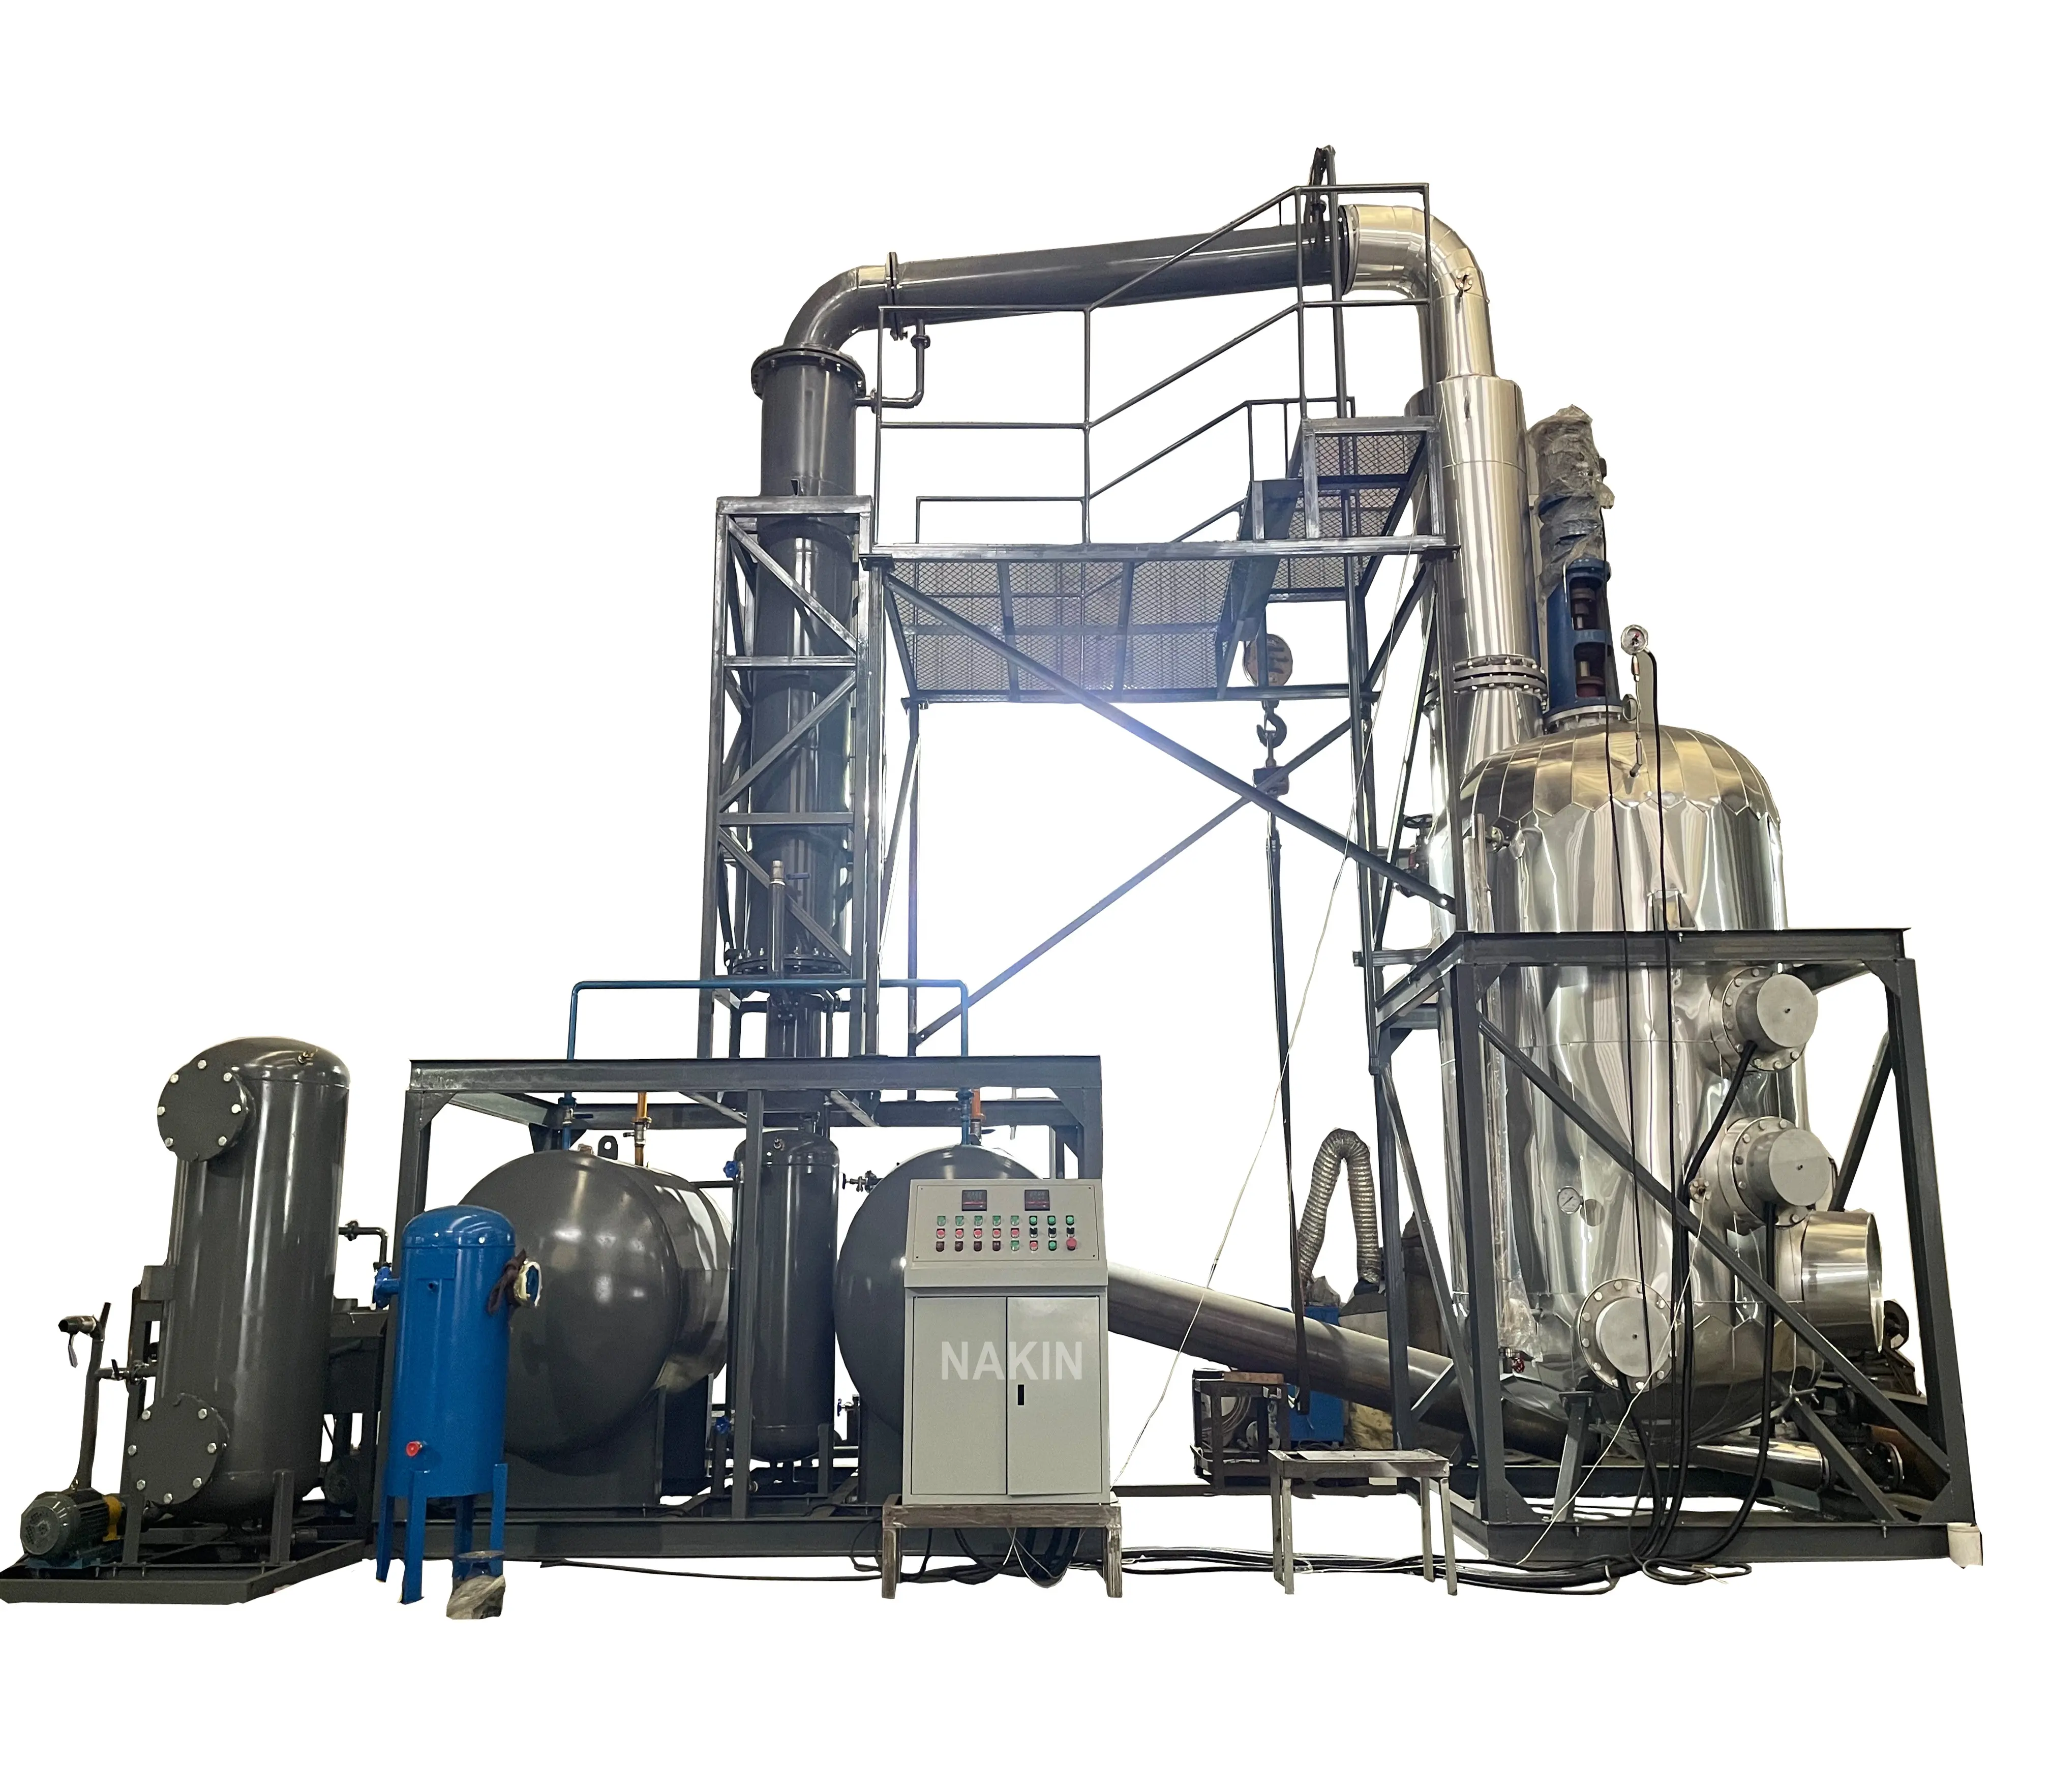 Machine de recyclage d'huile moteur usagée par distillation à haute température convertissant l'huile lubrifiante usagée en carburant diesel